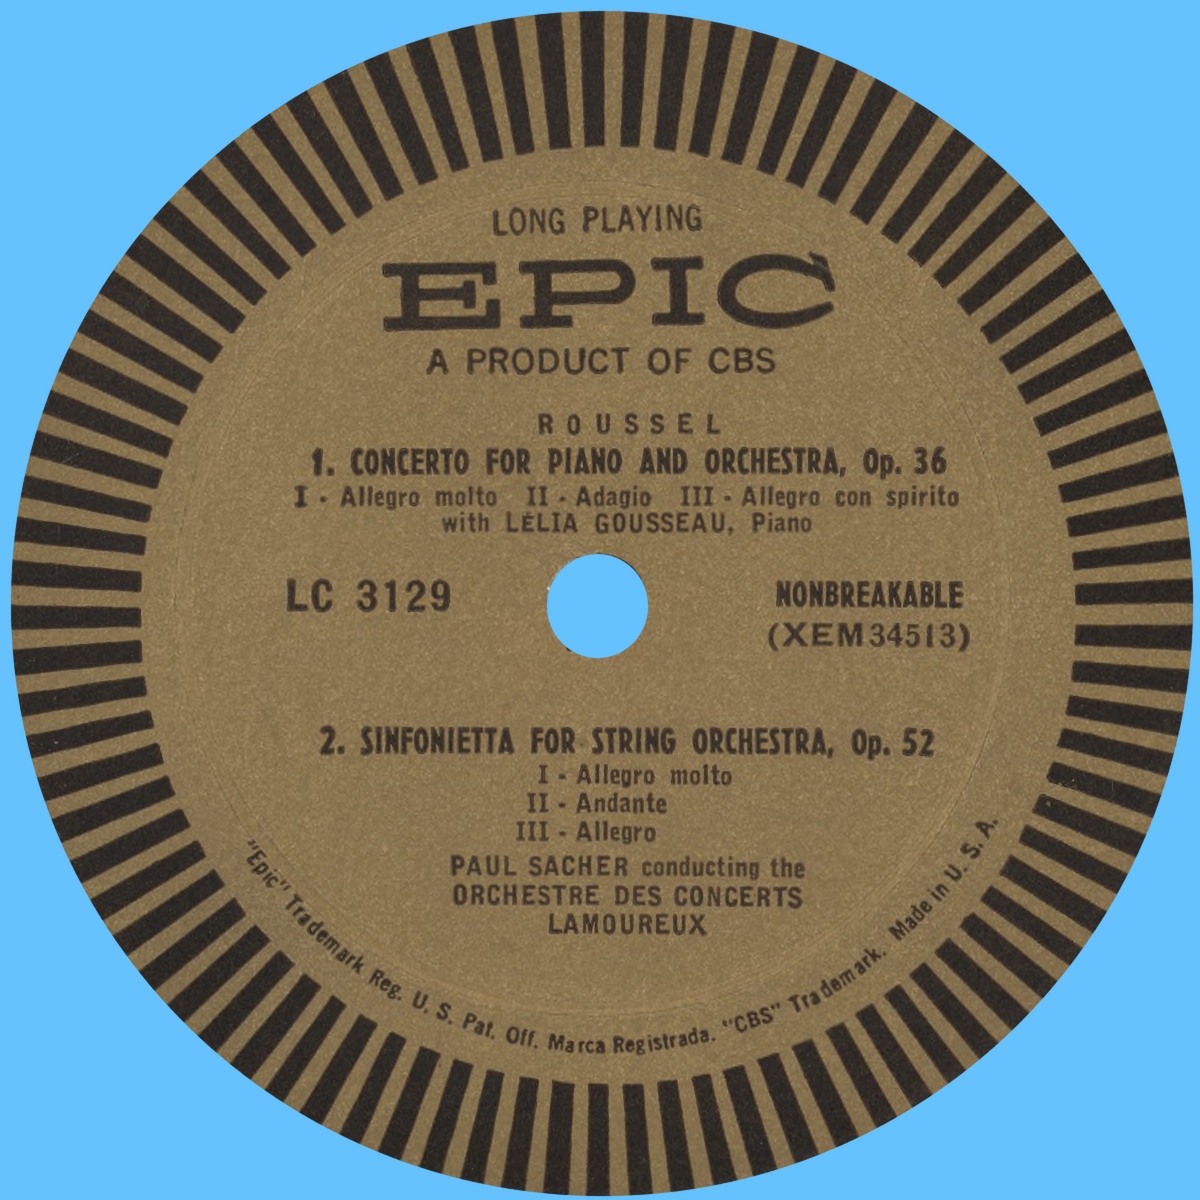 Étiquette verso du disque EPIC LC 3129